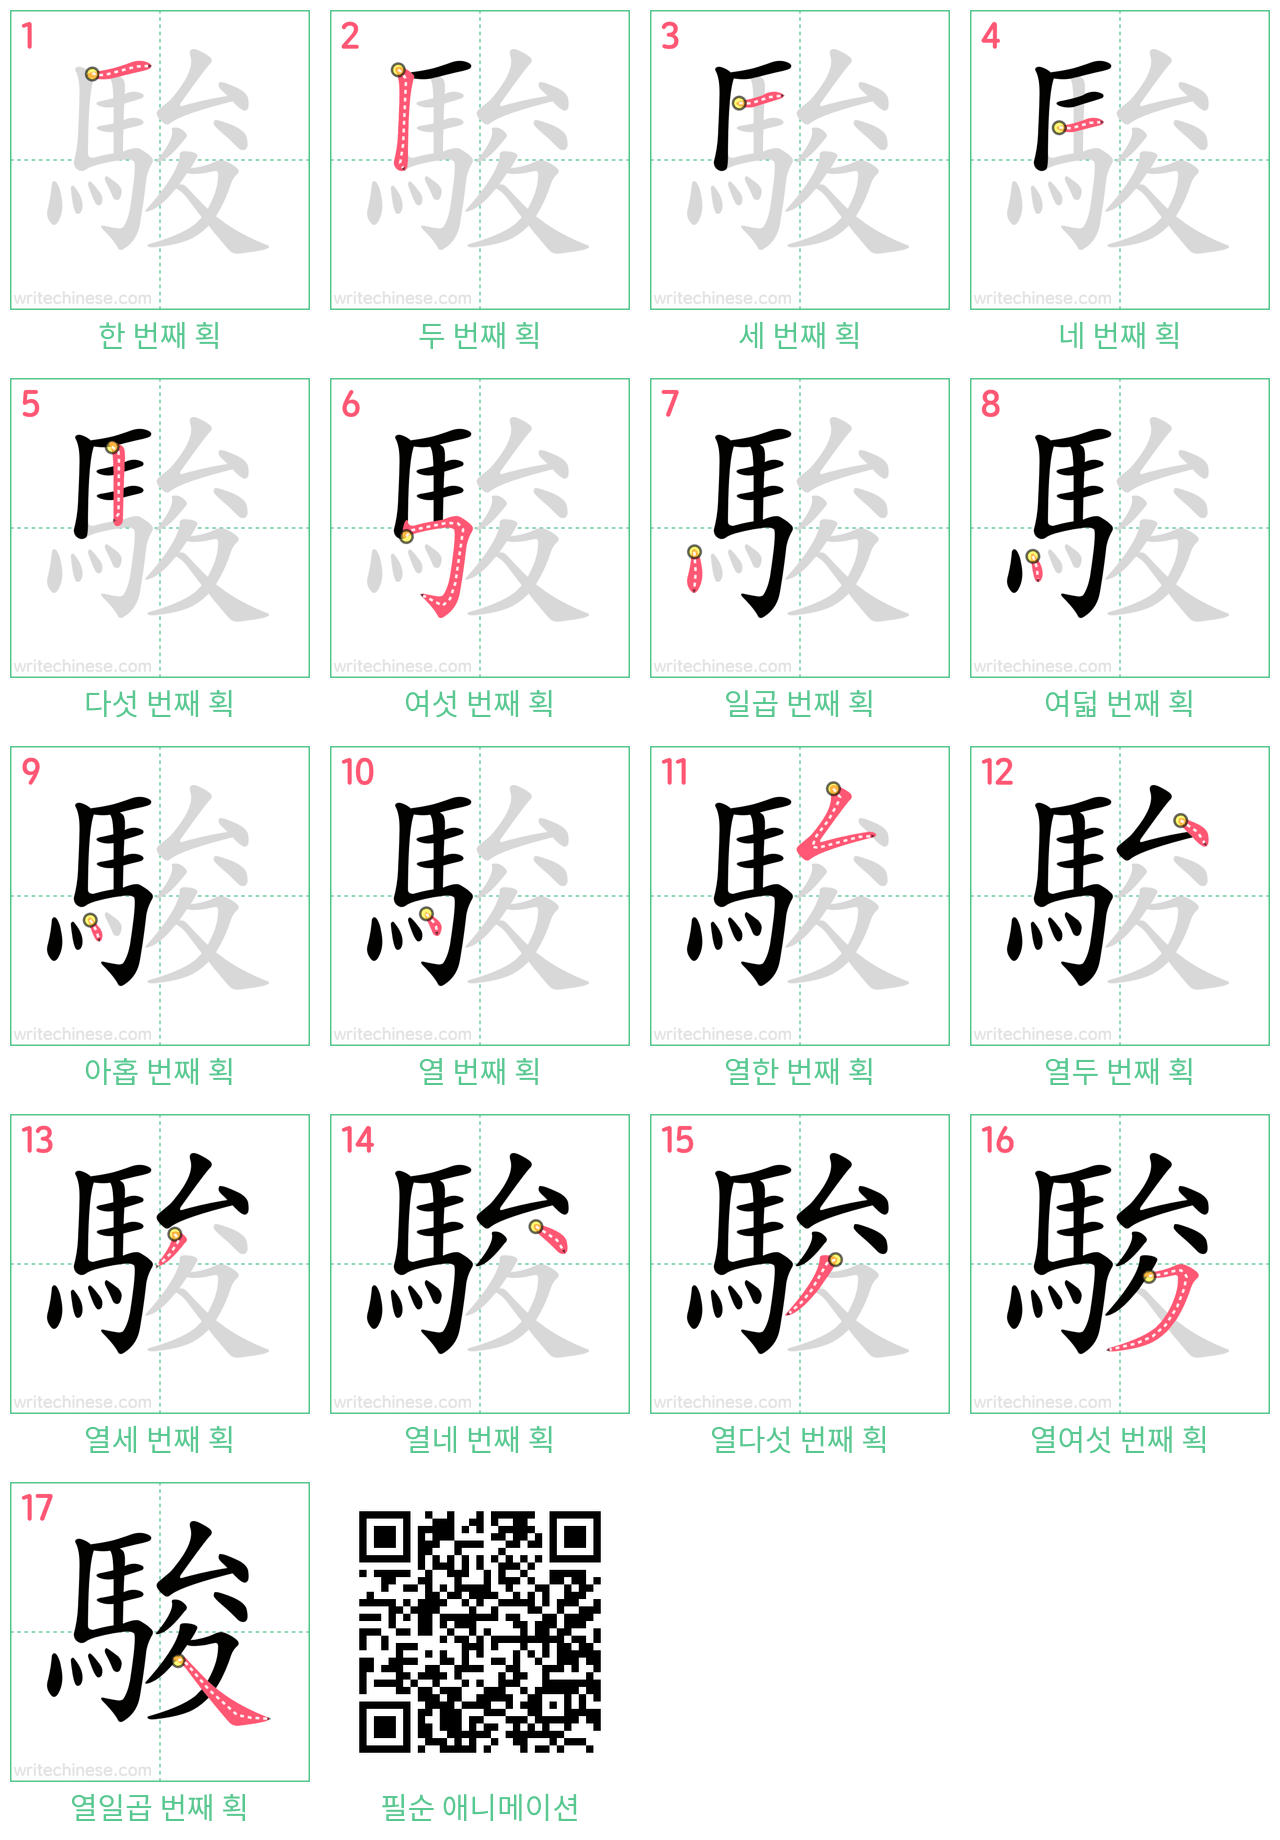 駿 step-by-step stroke order diagrams